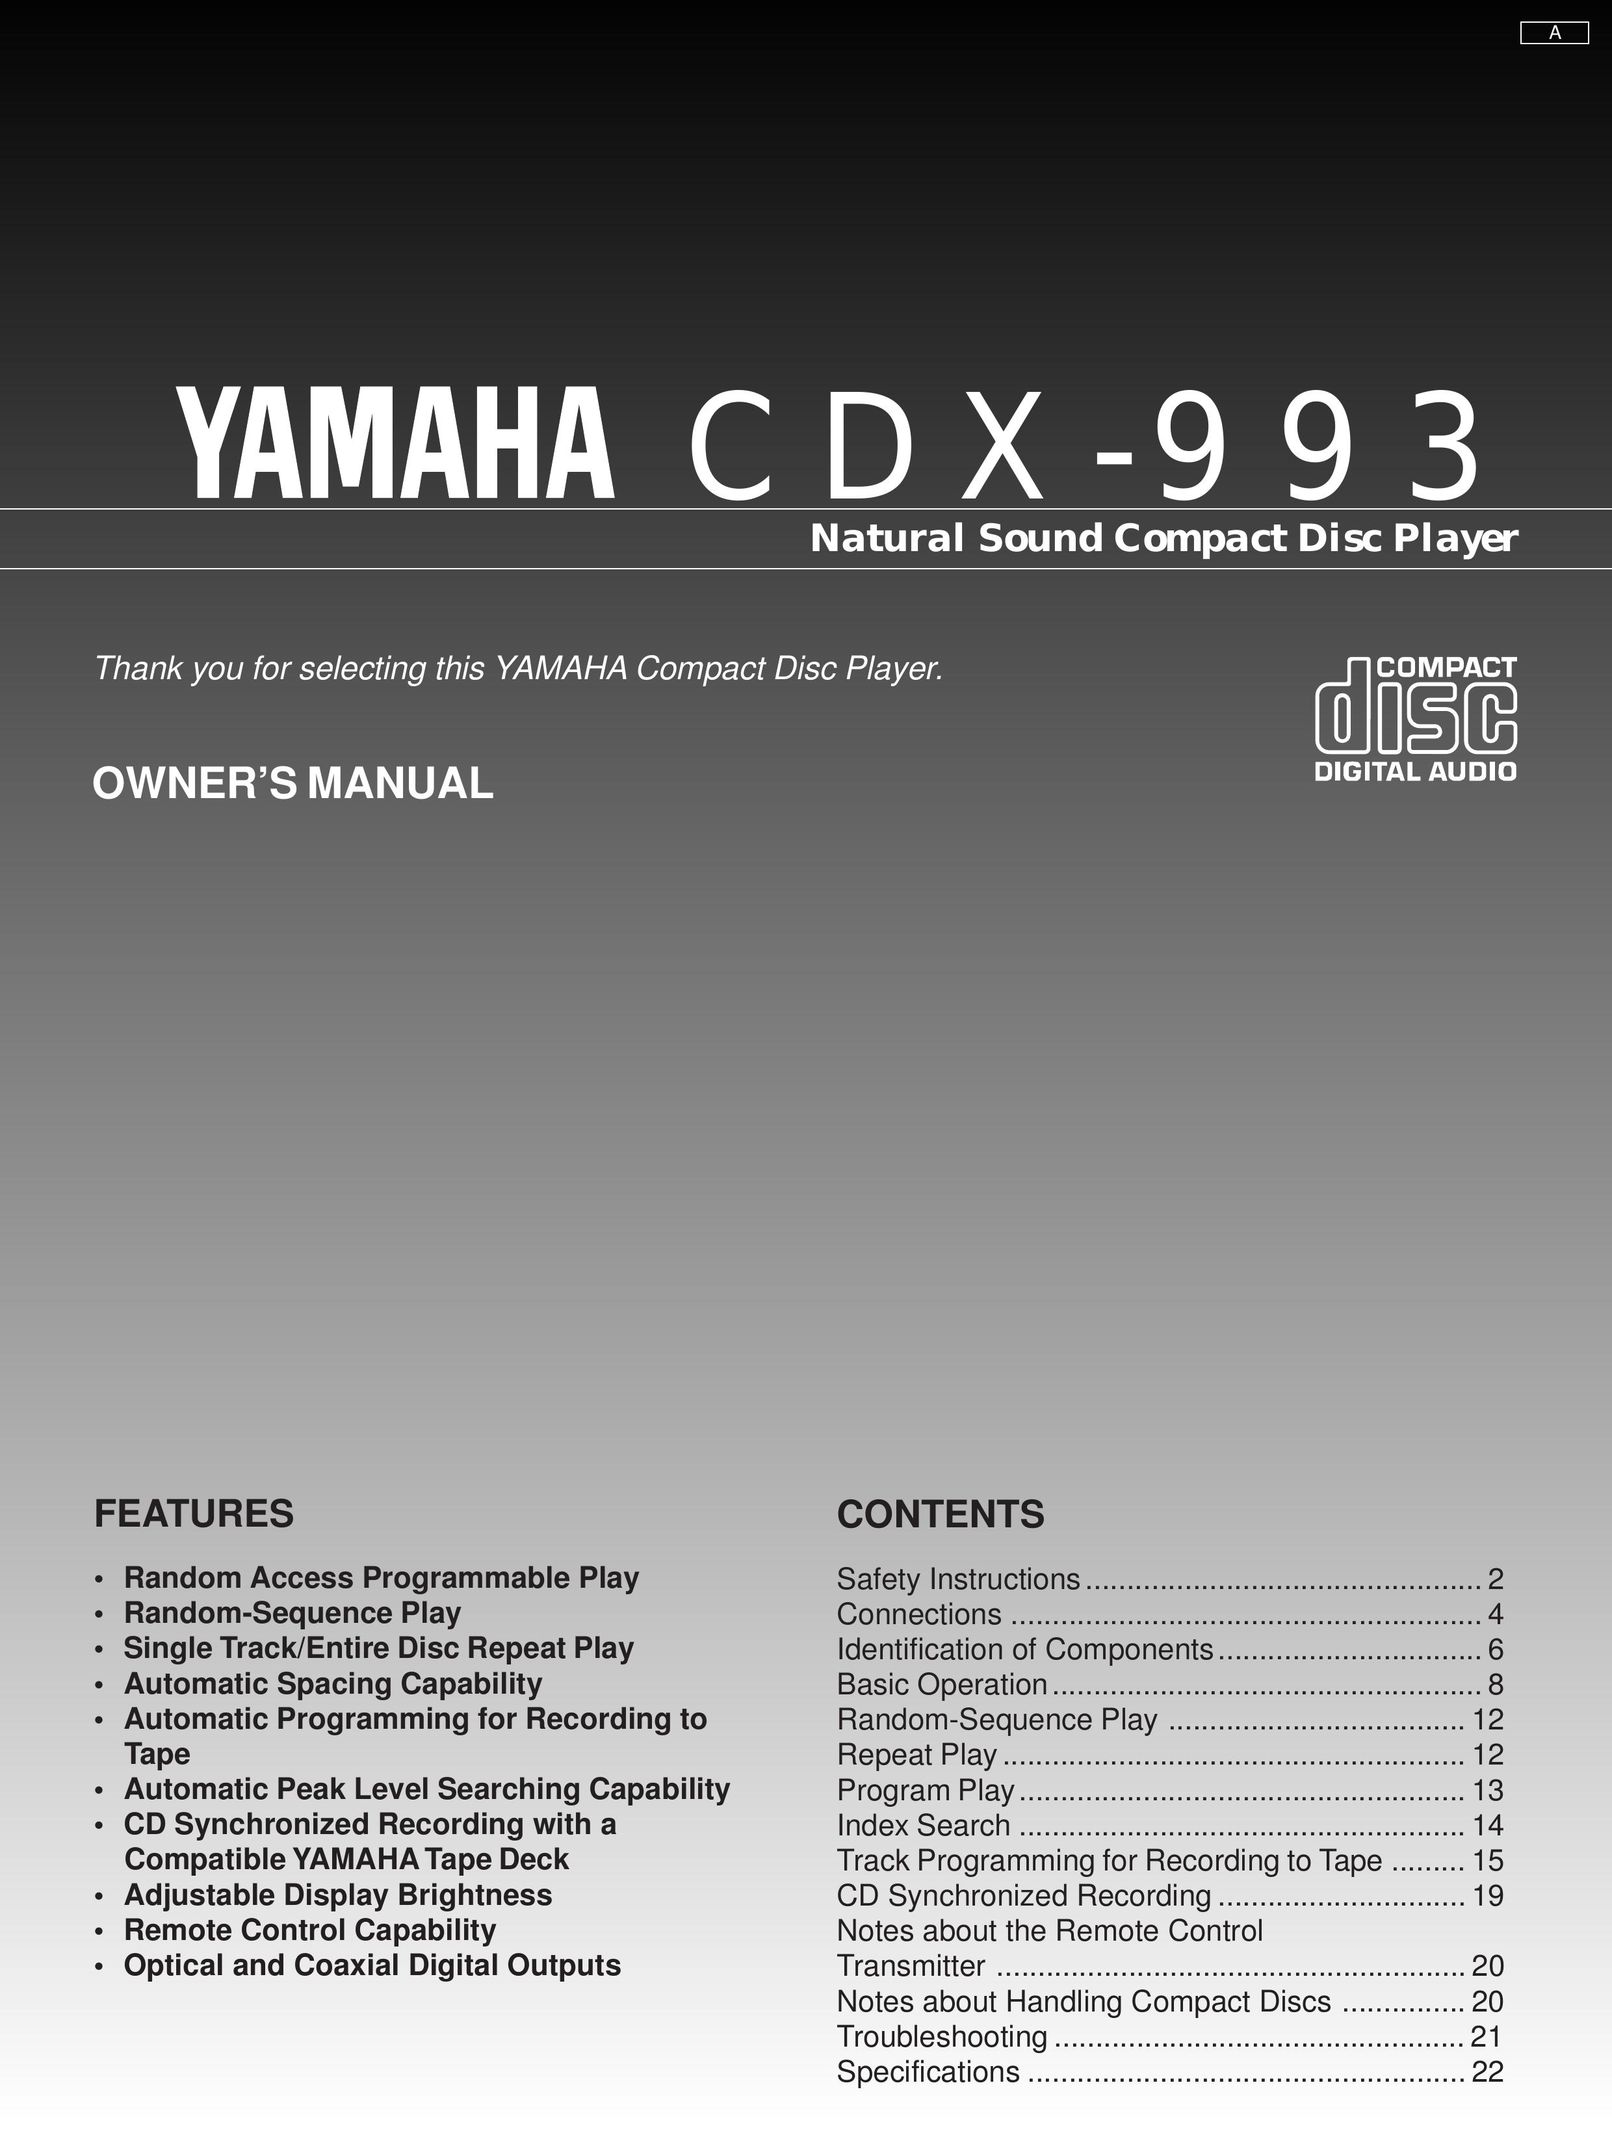 Yamaha CDX-993 CD Player User Manual